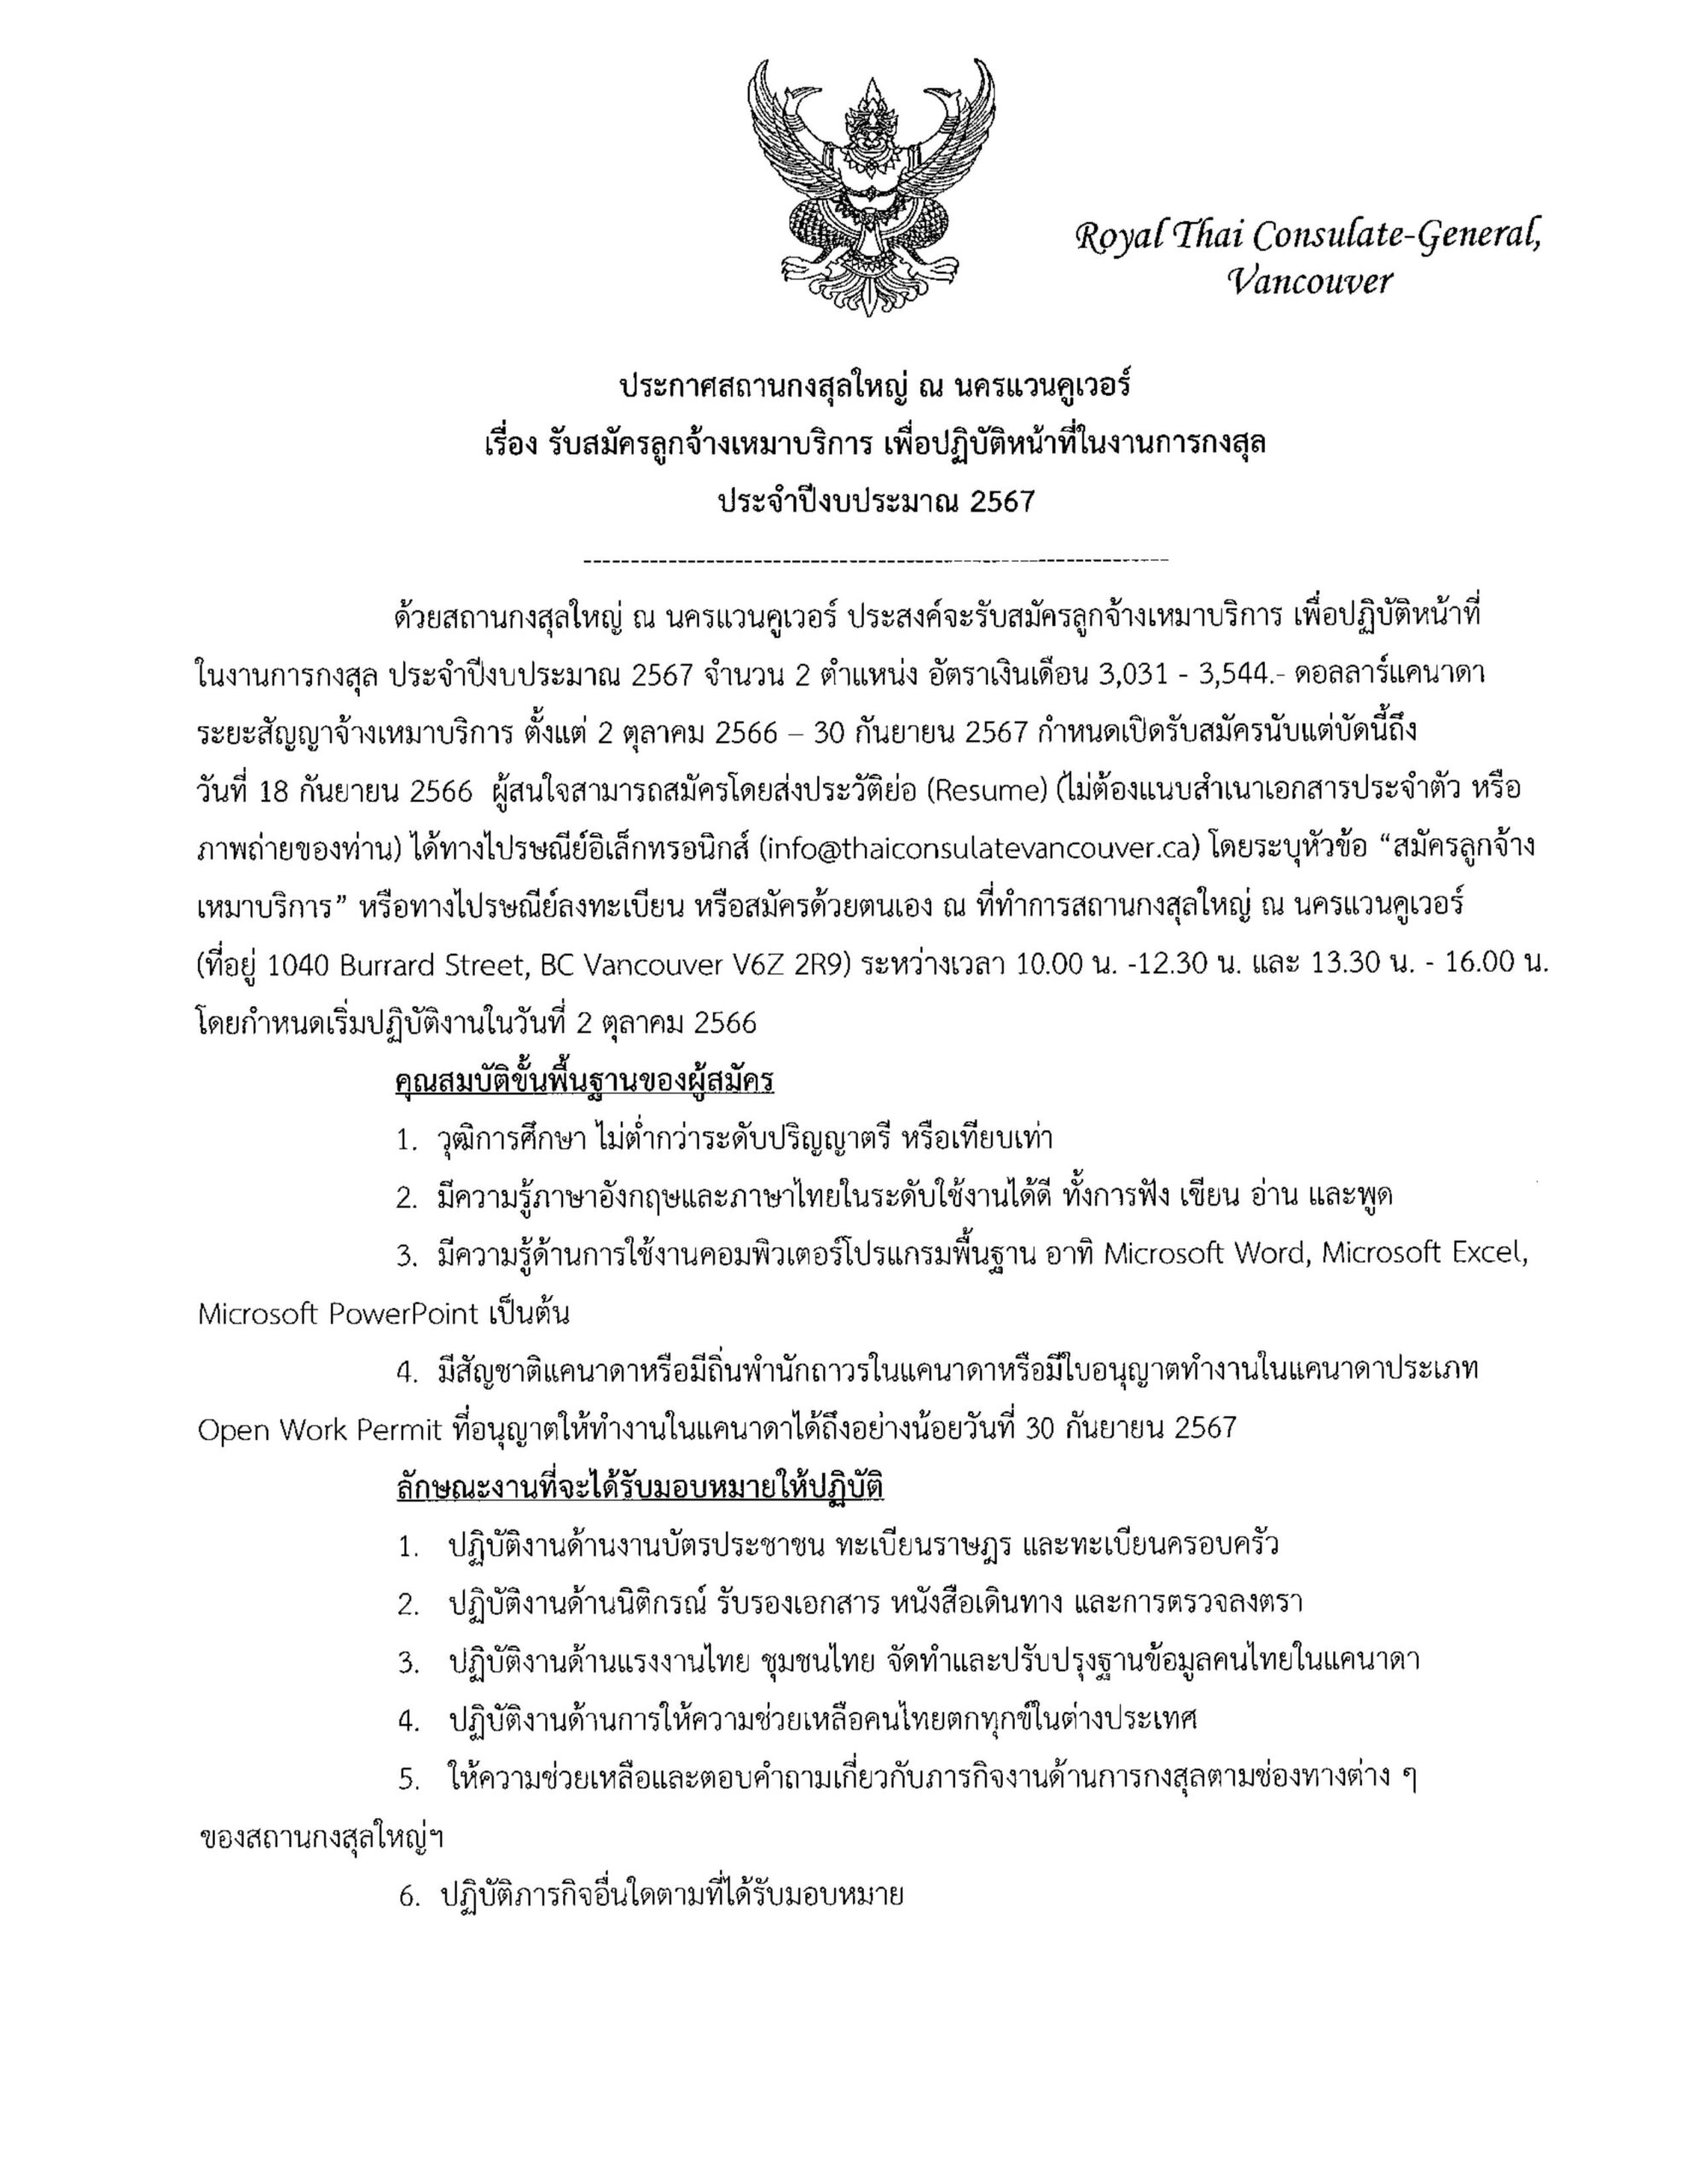 ประกาศสถานกงสุลใหญ่ ณ นครแวนคูเวอร์ เรื่อง รับสมัครลูกจ้างเหมาบริการ เพื่อปฏิบัติหน้าที่ในงานการกงสุล ประจำปีงบประมาณ 2567/Announcement: Royal Thai Consulate-General in Vancouver: Job Opportunity for Consular Assistant Positions (Independent Contractors)